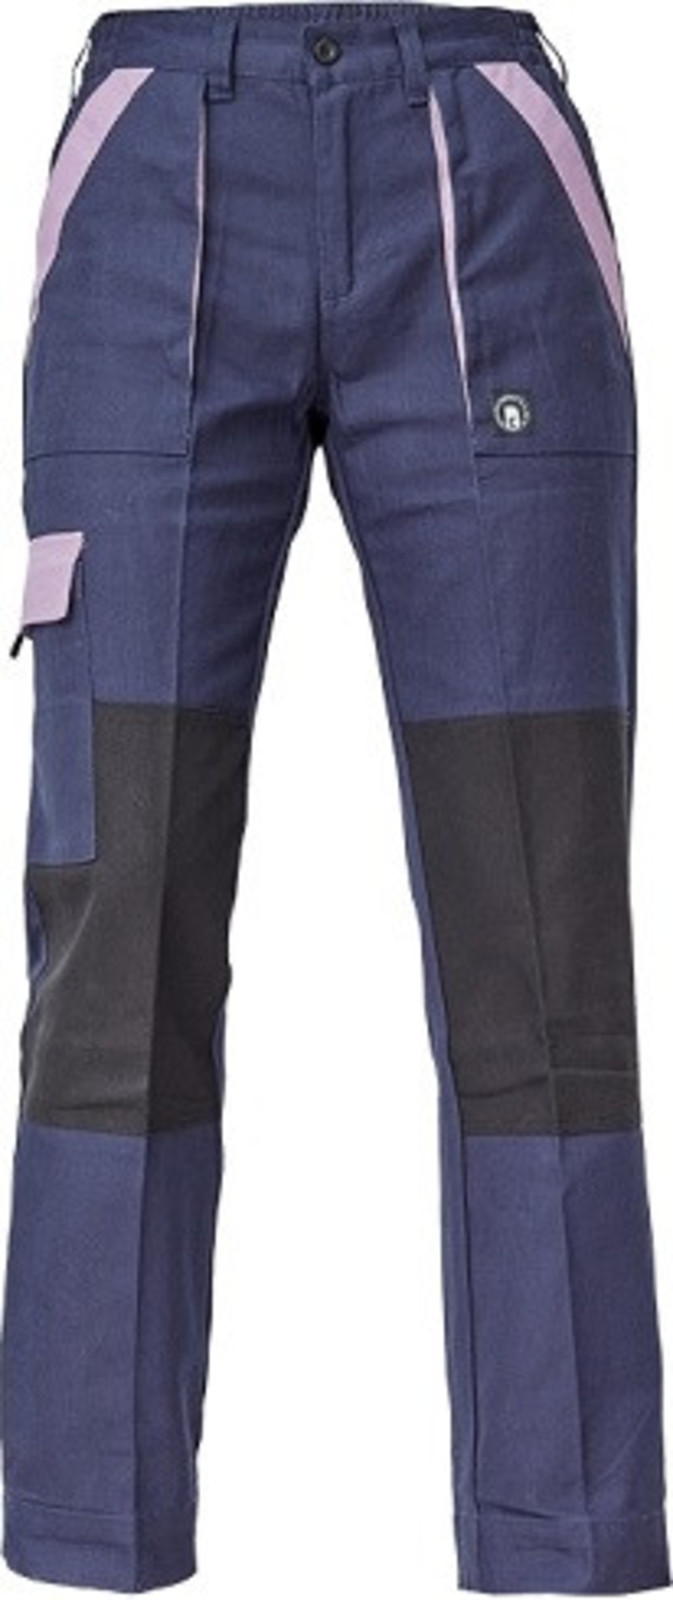 Dámske bavlnené montérky Cerva Max Neo Lady - veľkosť: 36, farba: navy/fialová